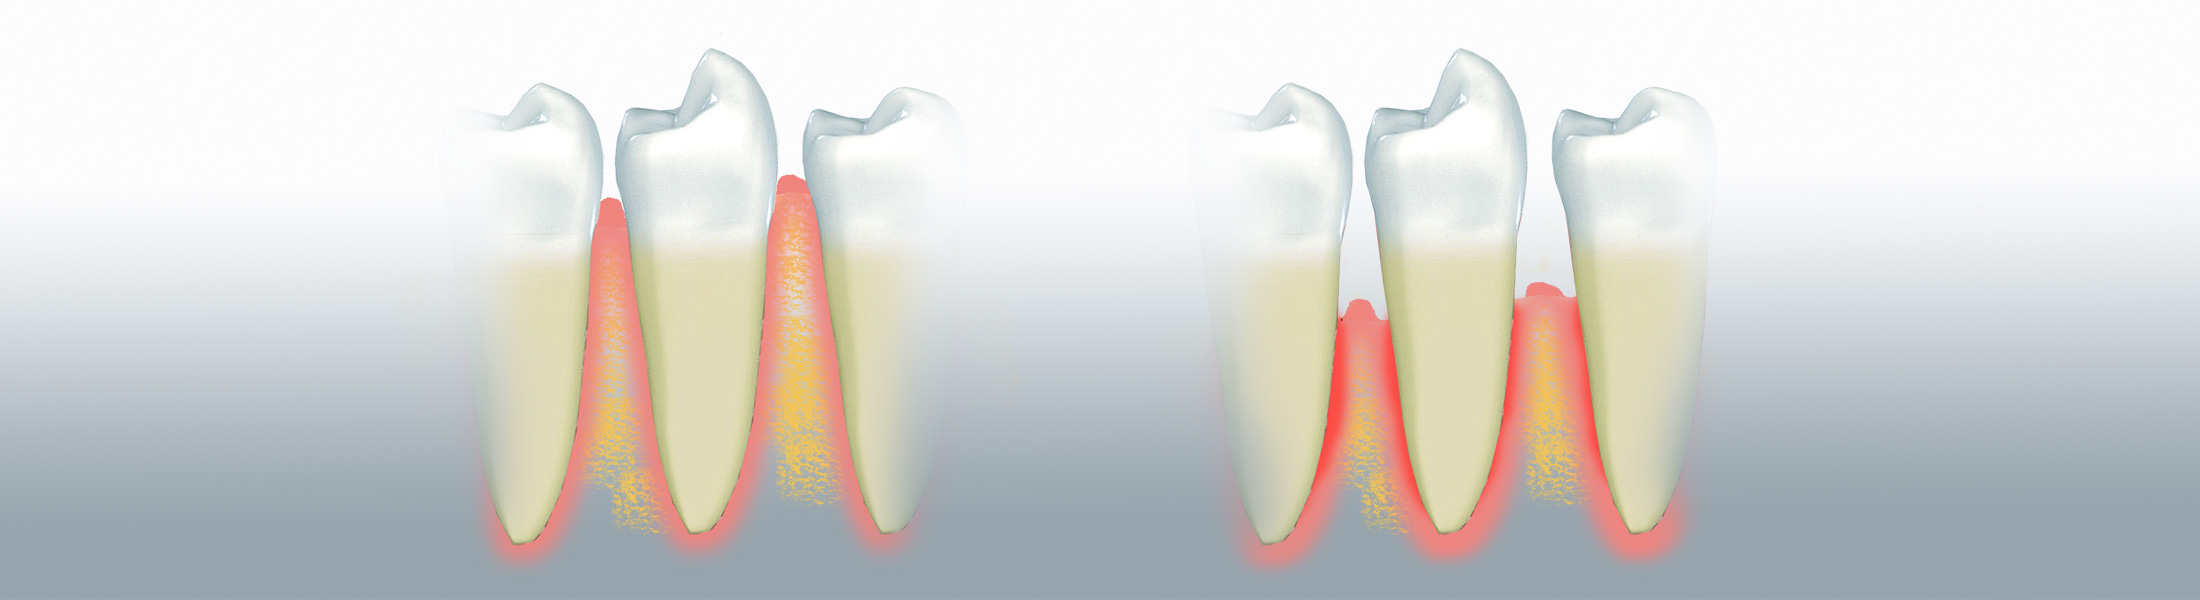 Bakterien, die sich zwischen Zahn und Zahnfleisch ansammeln können eine Parodontitis auslösen Bakterien, die sich zwischen Zahn und Zahnfleisch ansammeln können eine Parodontitis auslösen 